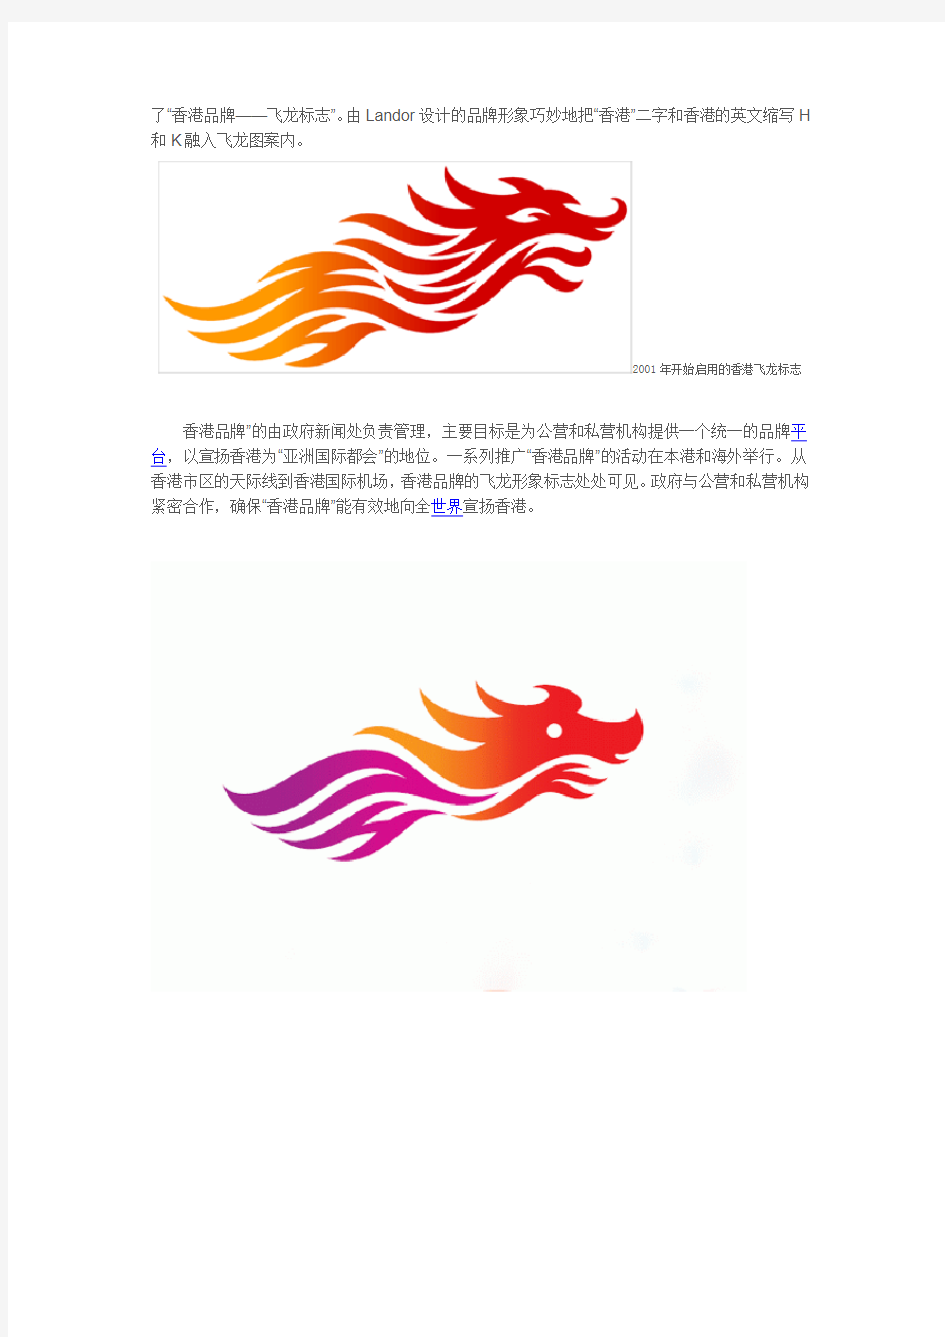 陈幼坚的香港新标志与中国城市标志设计